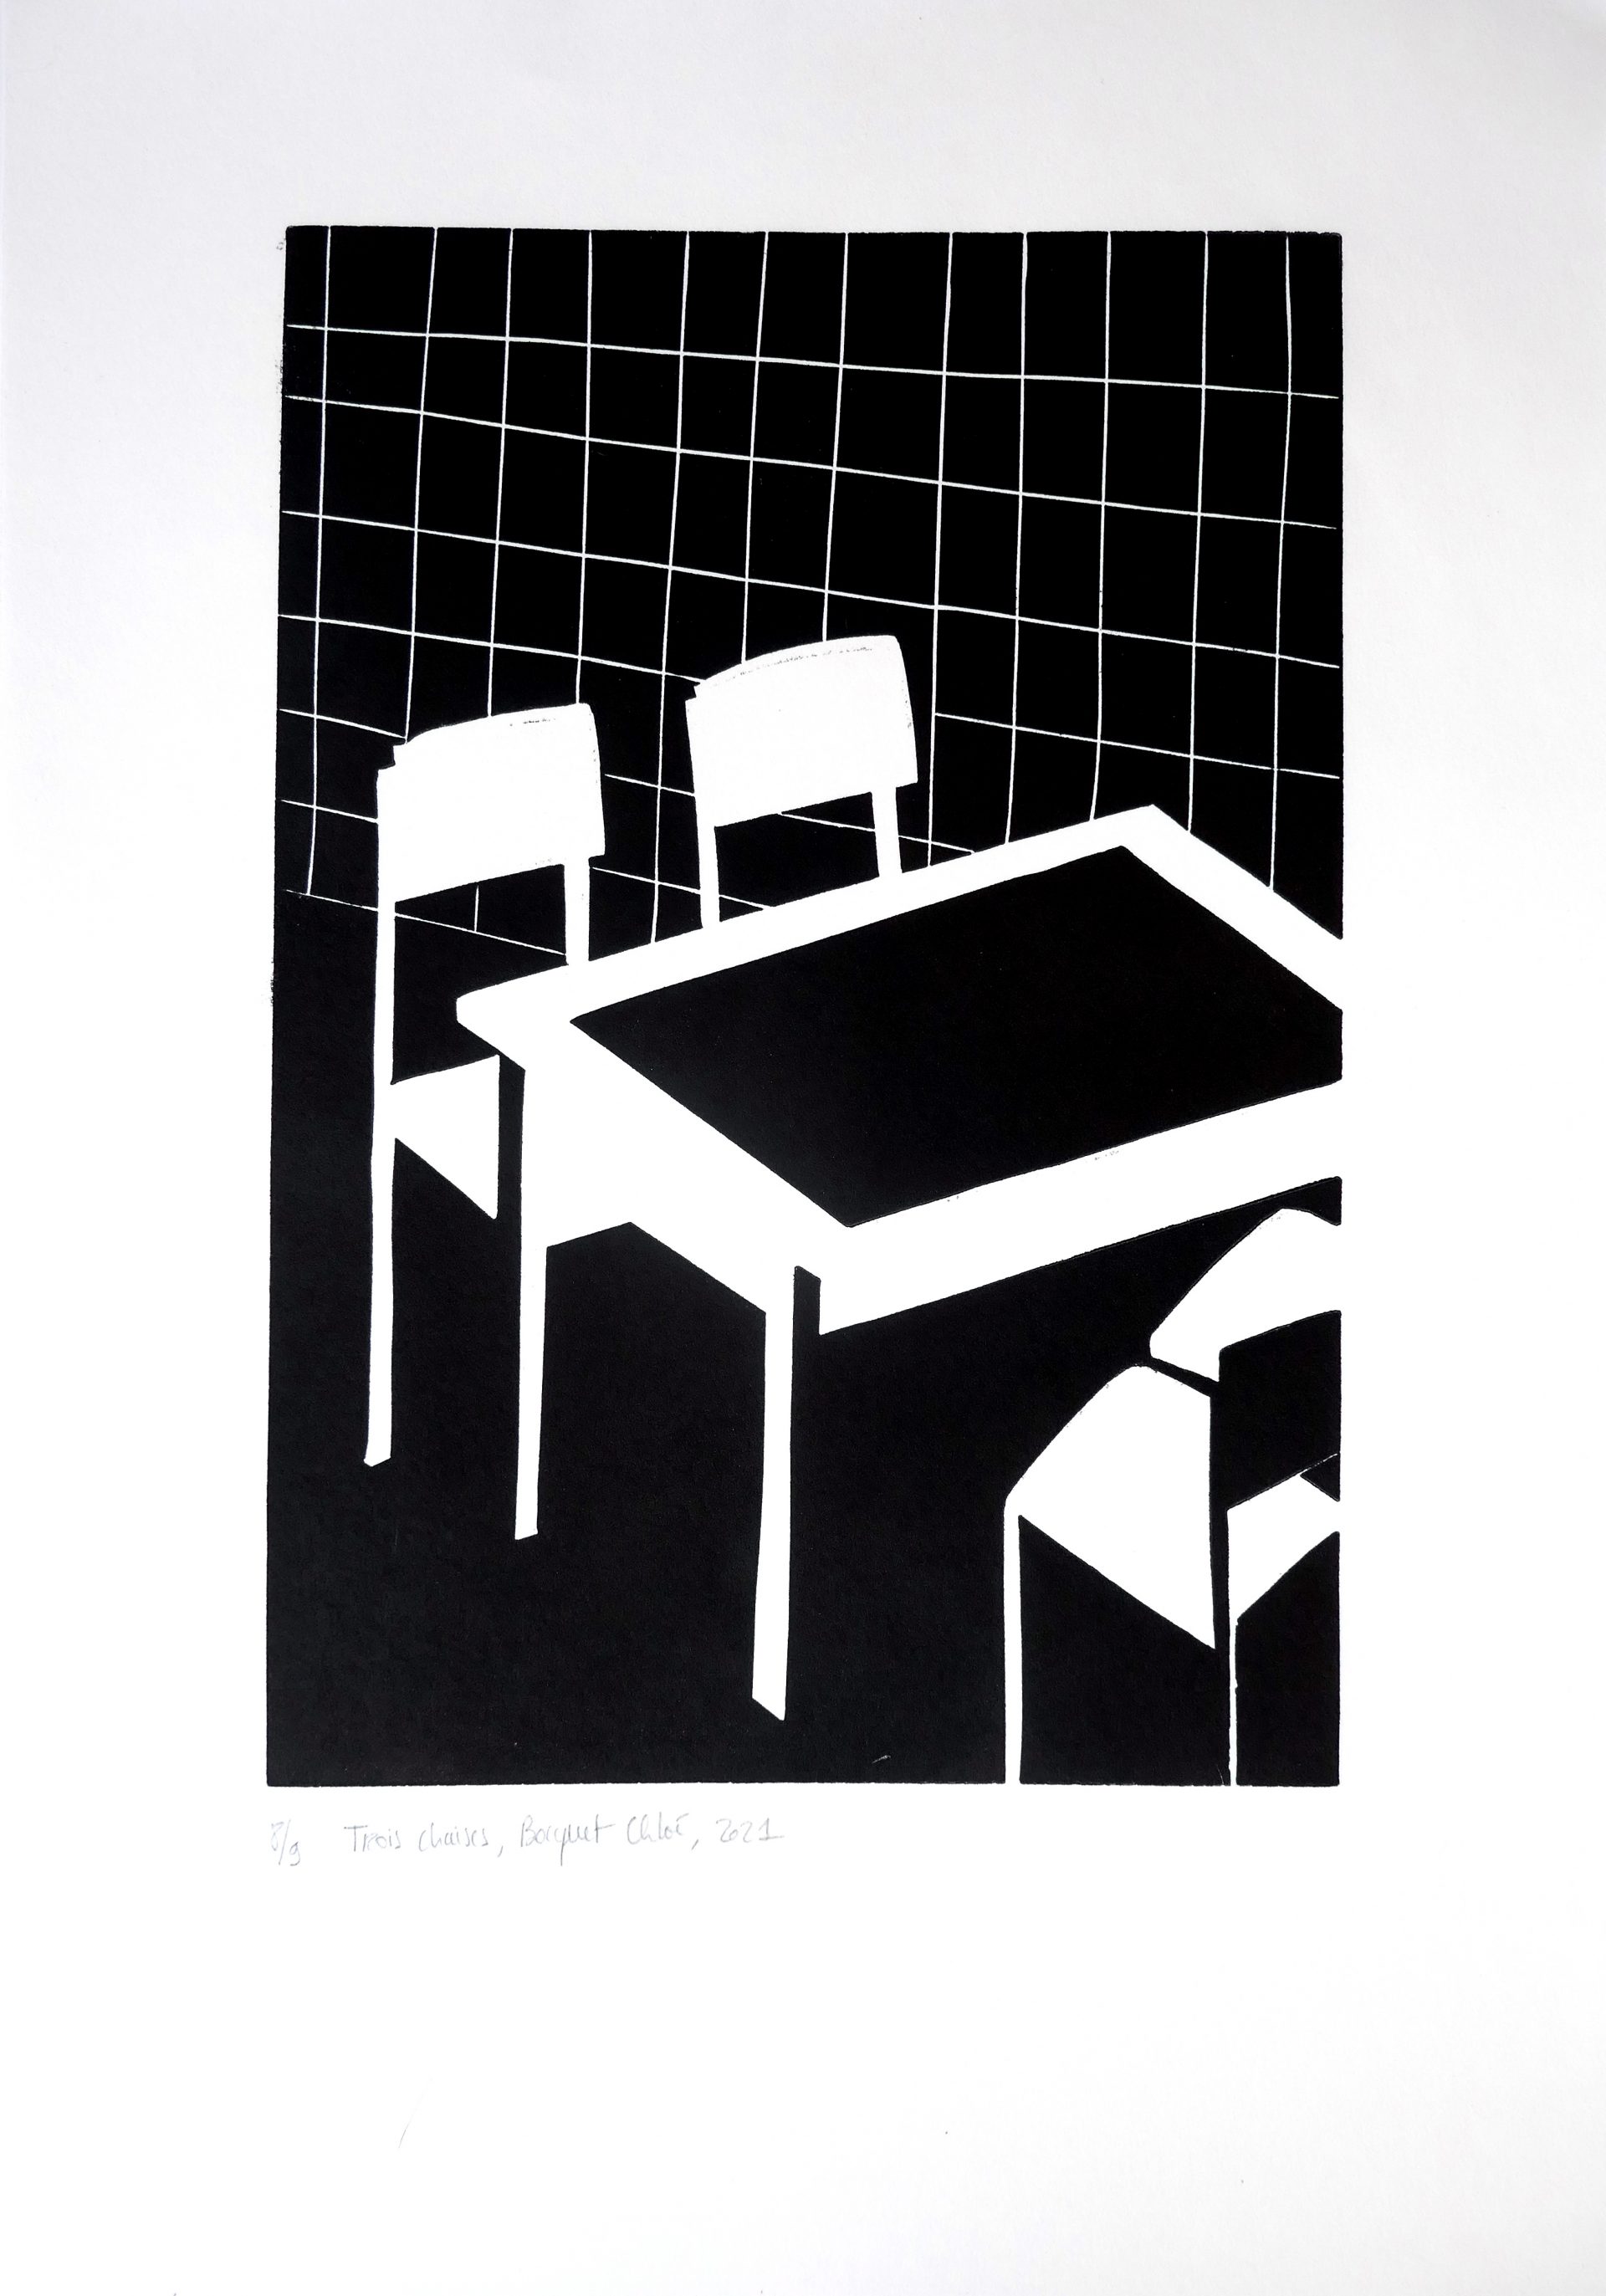 3 chaises, 2020, linocut, image size 43x21 cm, paper size 45,5x32 cm, edition of 9